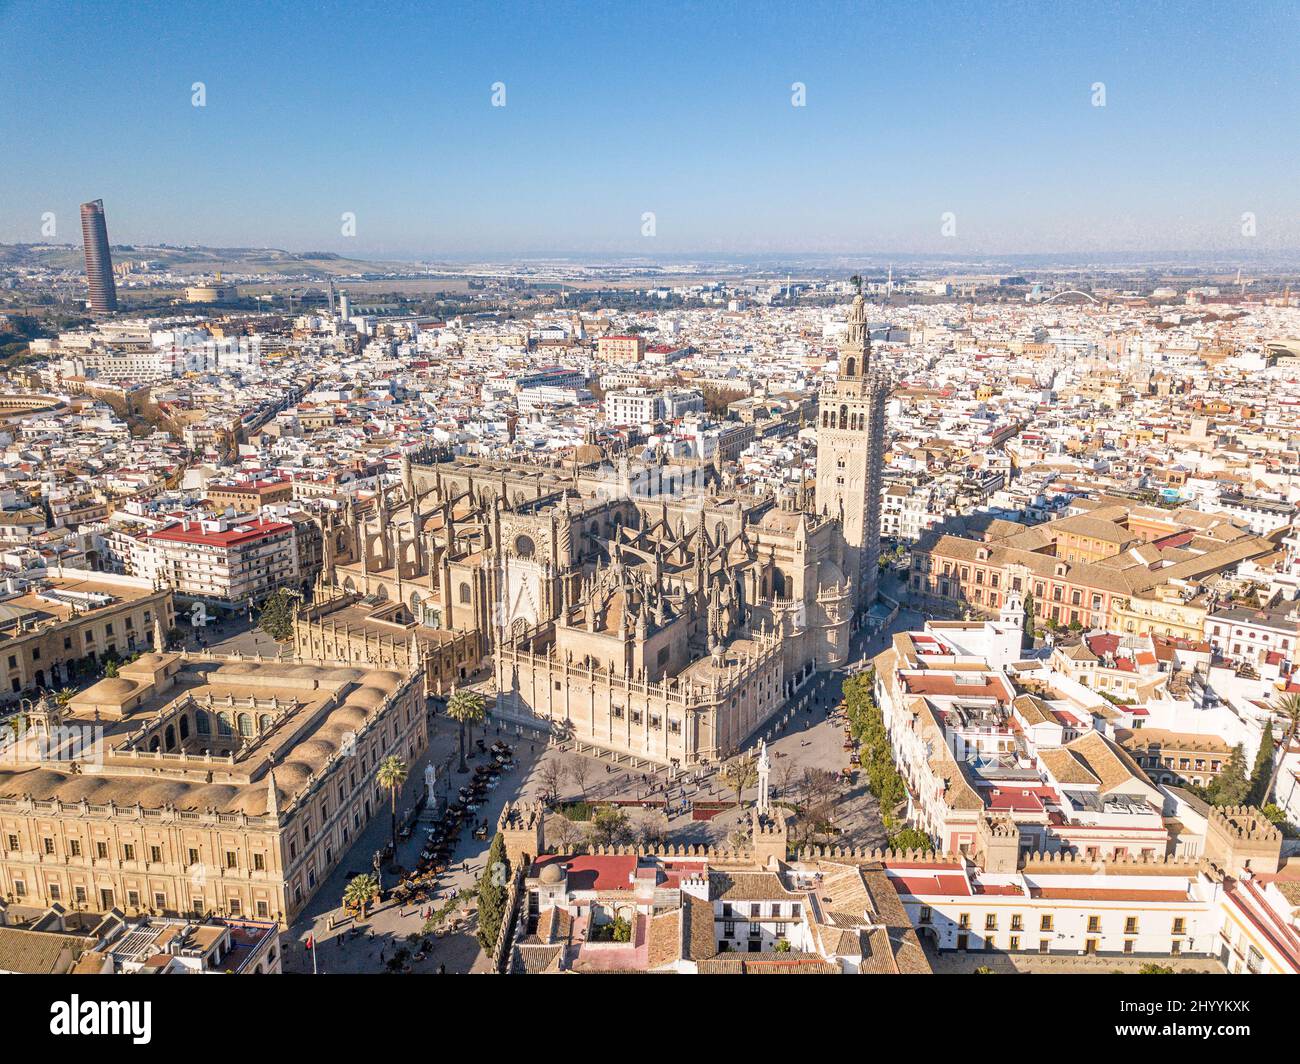 Perspectiva aérea panorámica de la Catedral de Sevilla. Vista desde arriba, frente a la catedral se encuentra el edificio de 'Archivos de Indias'. Foto de stock